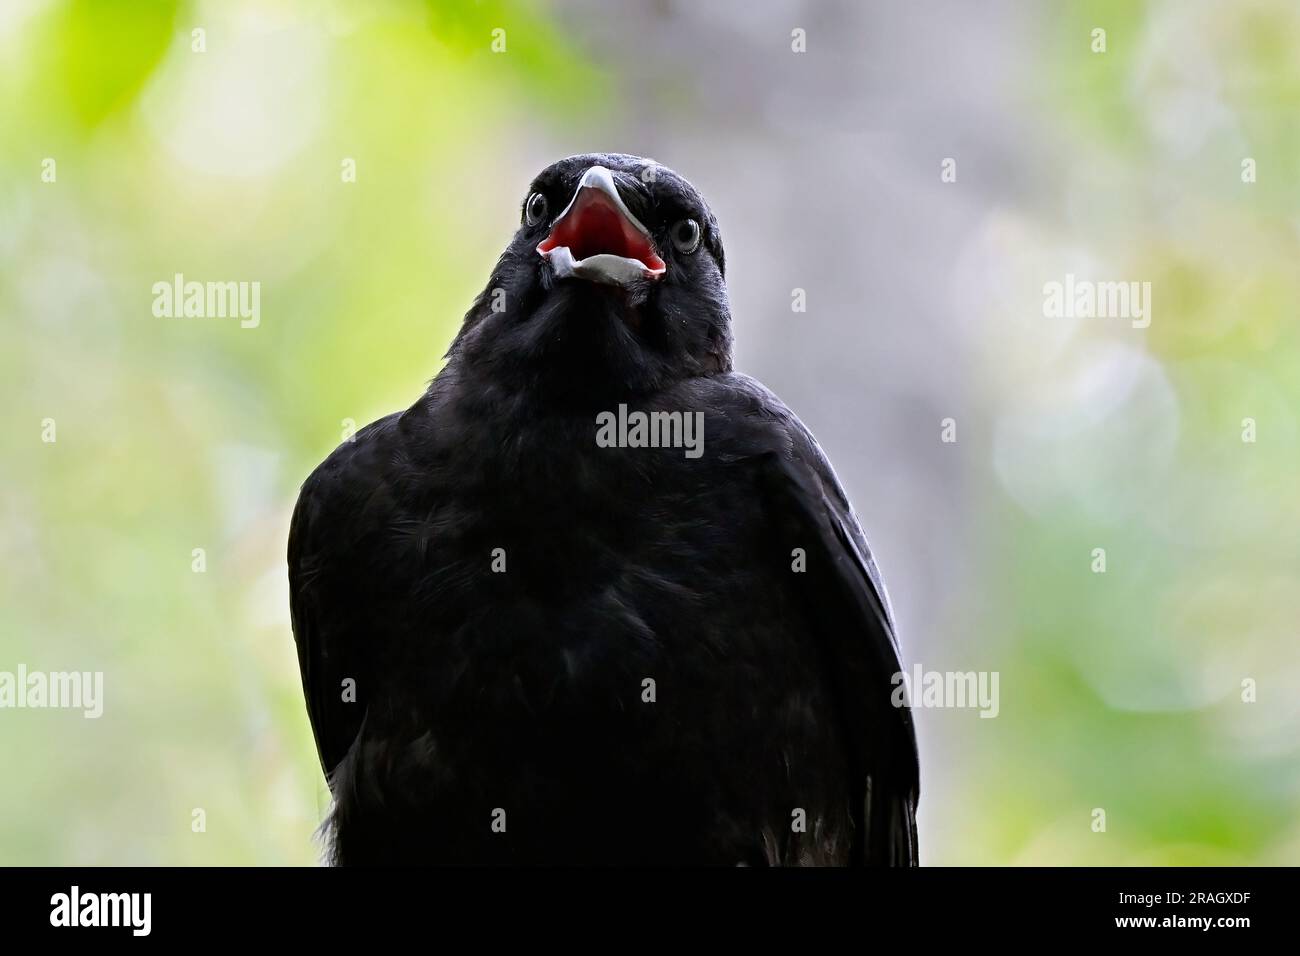 Une vue rapprochée d'un jeune corbeau américain 'Corvus brachynchos', en train de s'exprimer avec une drôle d'expression sur son visage. Banque D'Images